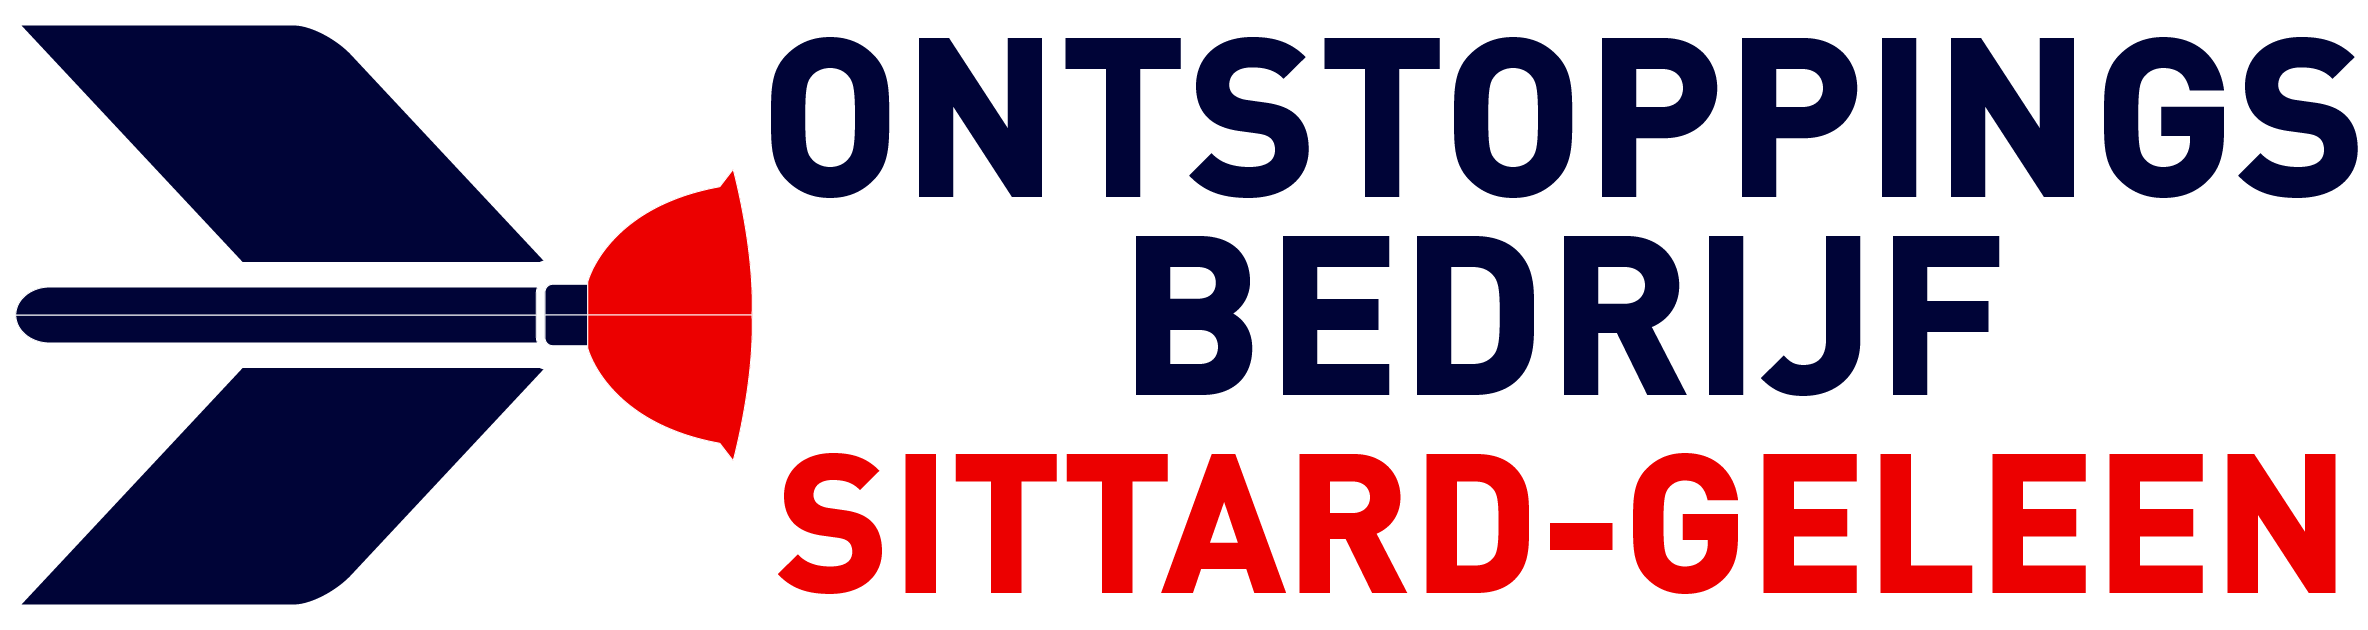 Ontstoppingsbedrijf Sittard-Geleen logo